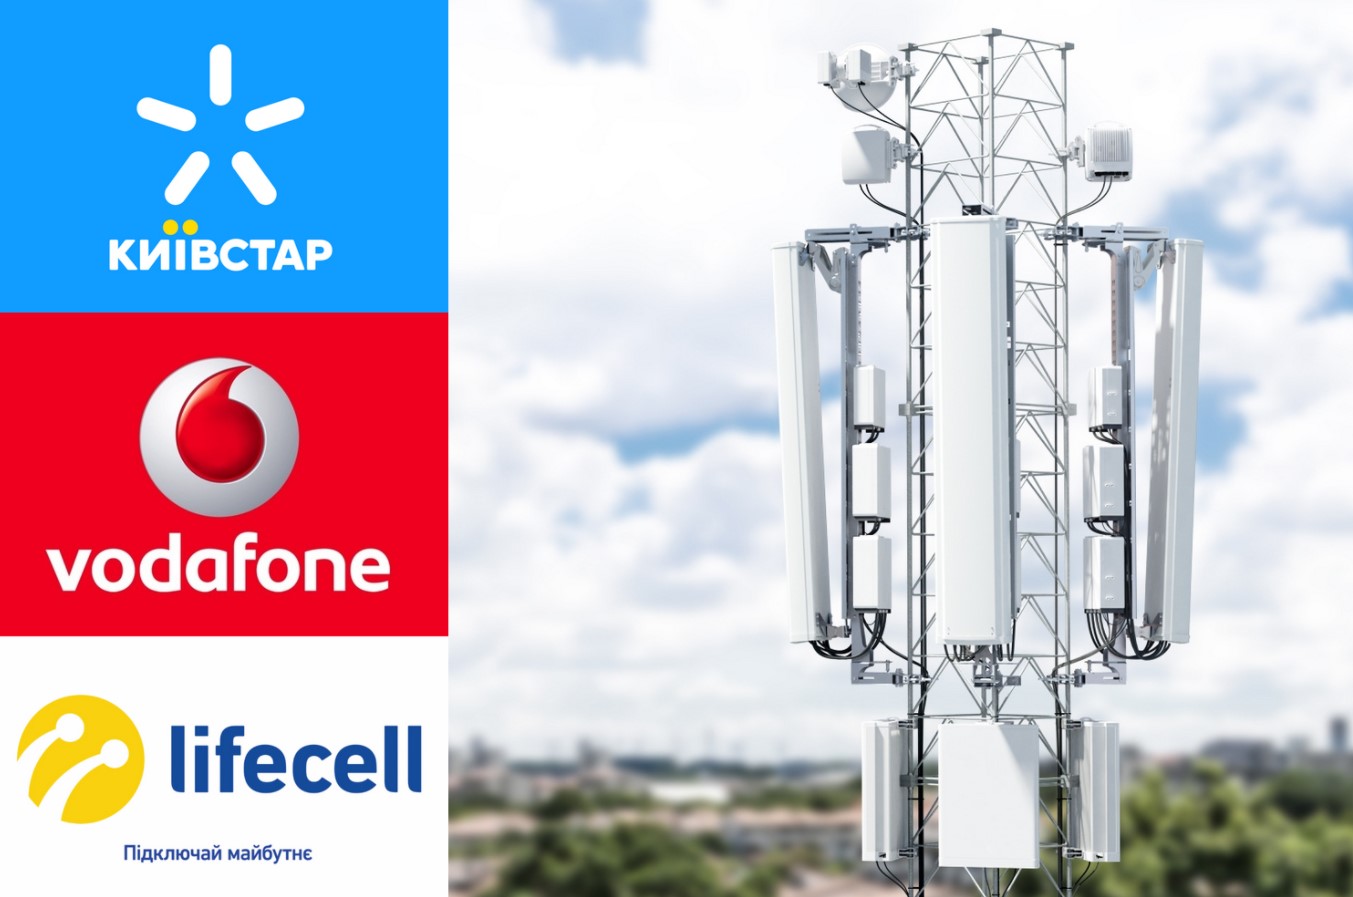 Київстар, Vodafone, Lifecell: стало відомо, у кого з операторів найшвидший мобільний інтернет